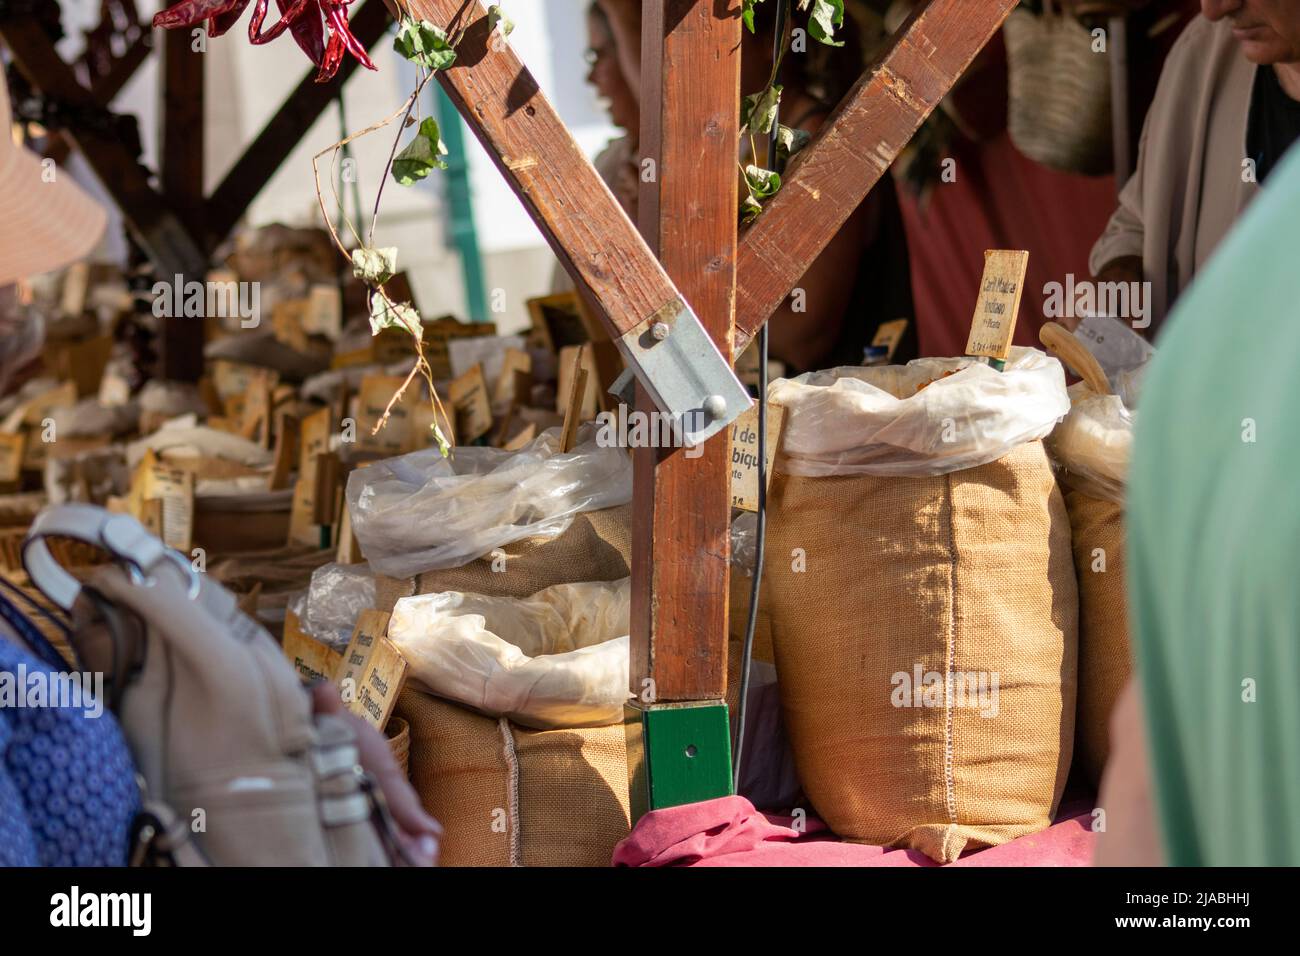 Mercado tradicional de especias y hierbas aromáticas en bancos de madera celebrado en ferias medievales y eventos culturales Foto de stock